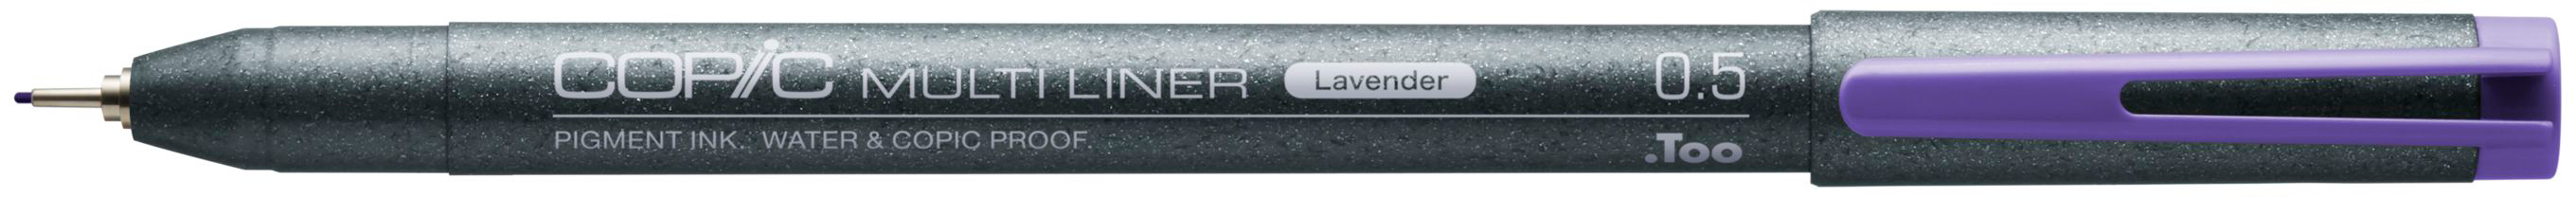 COPIC Multiliner 0.5mm 22075549 lavender lavender